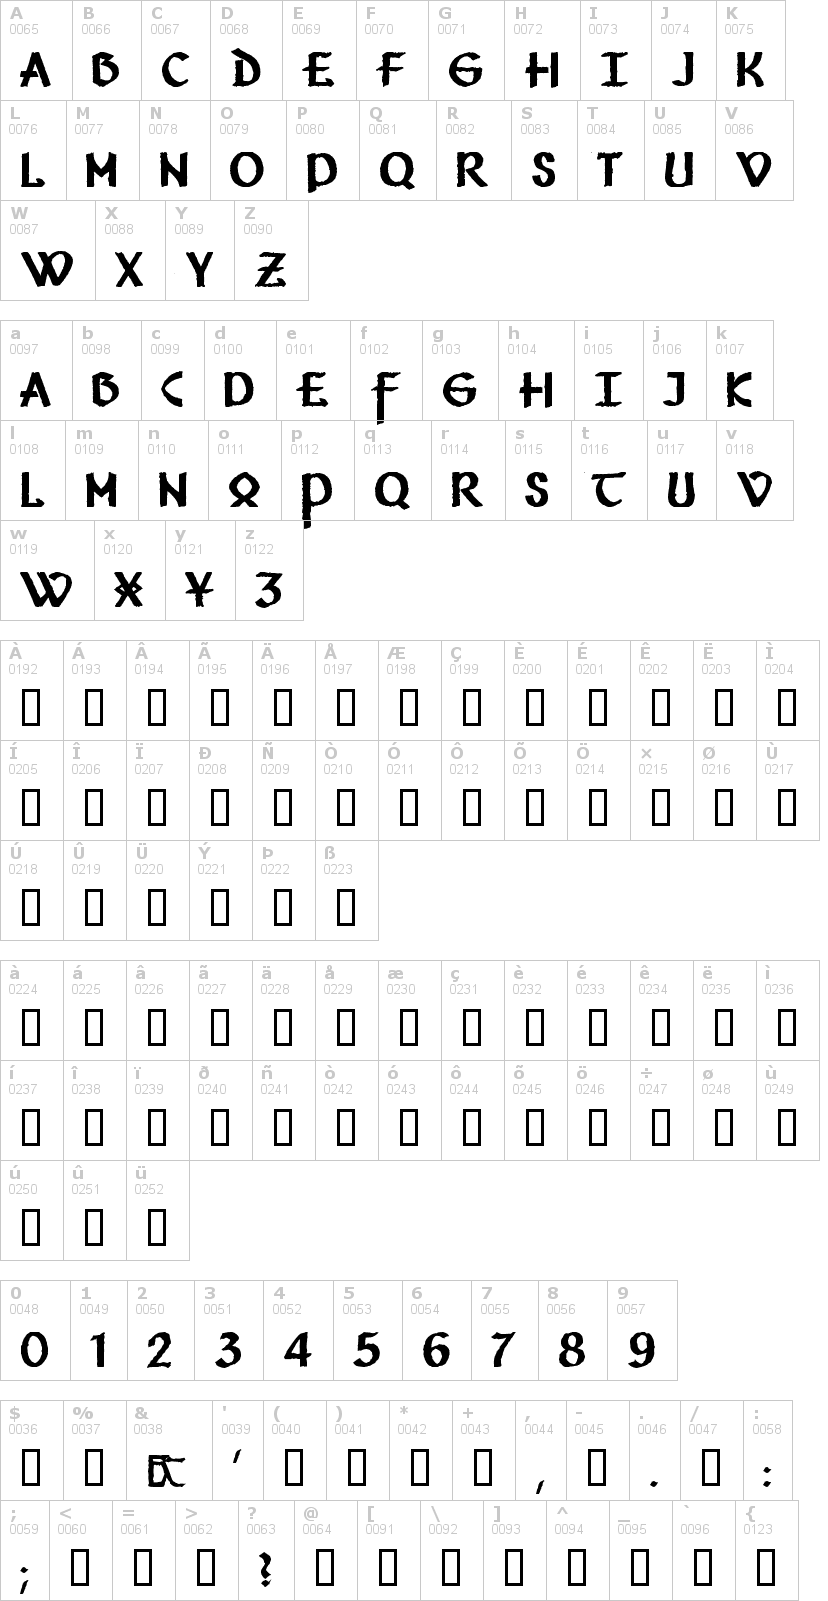 Lettere dell'alfabeto del font vafthrudnir con le quali è possibile realizzare adesivi prespaziati